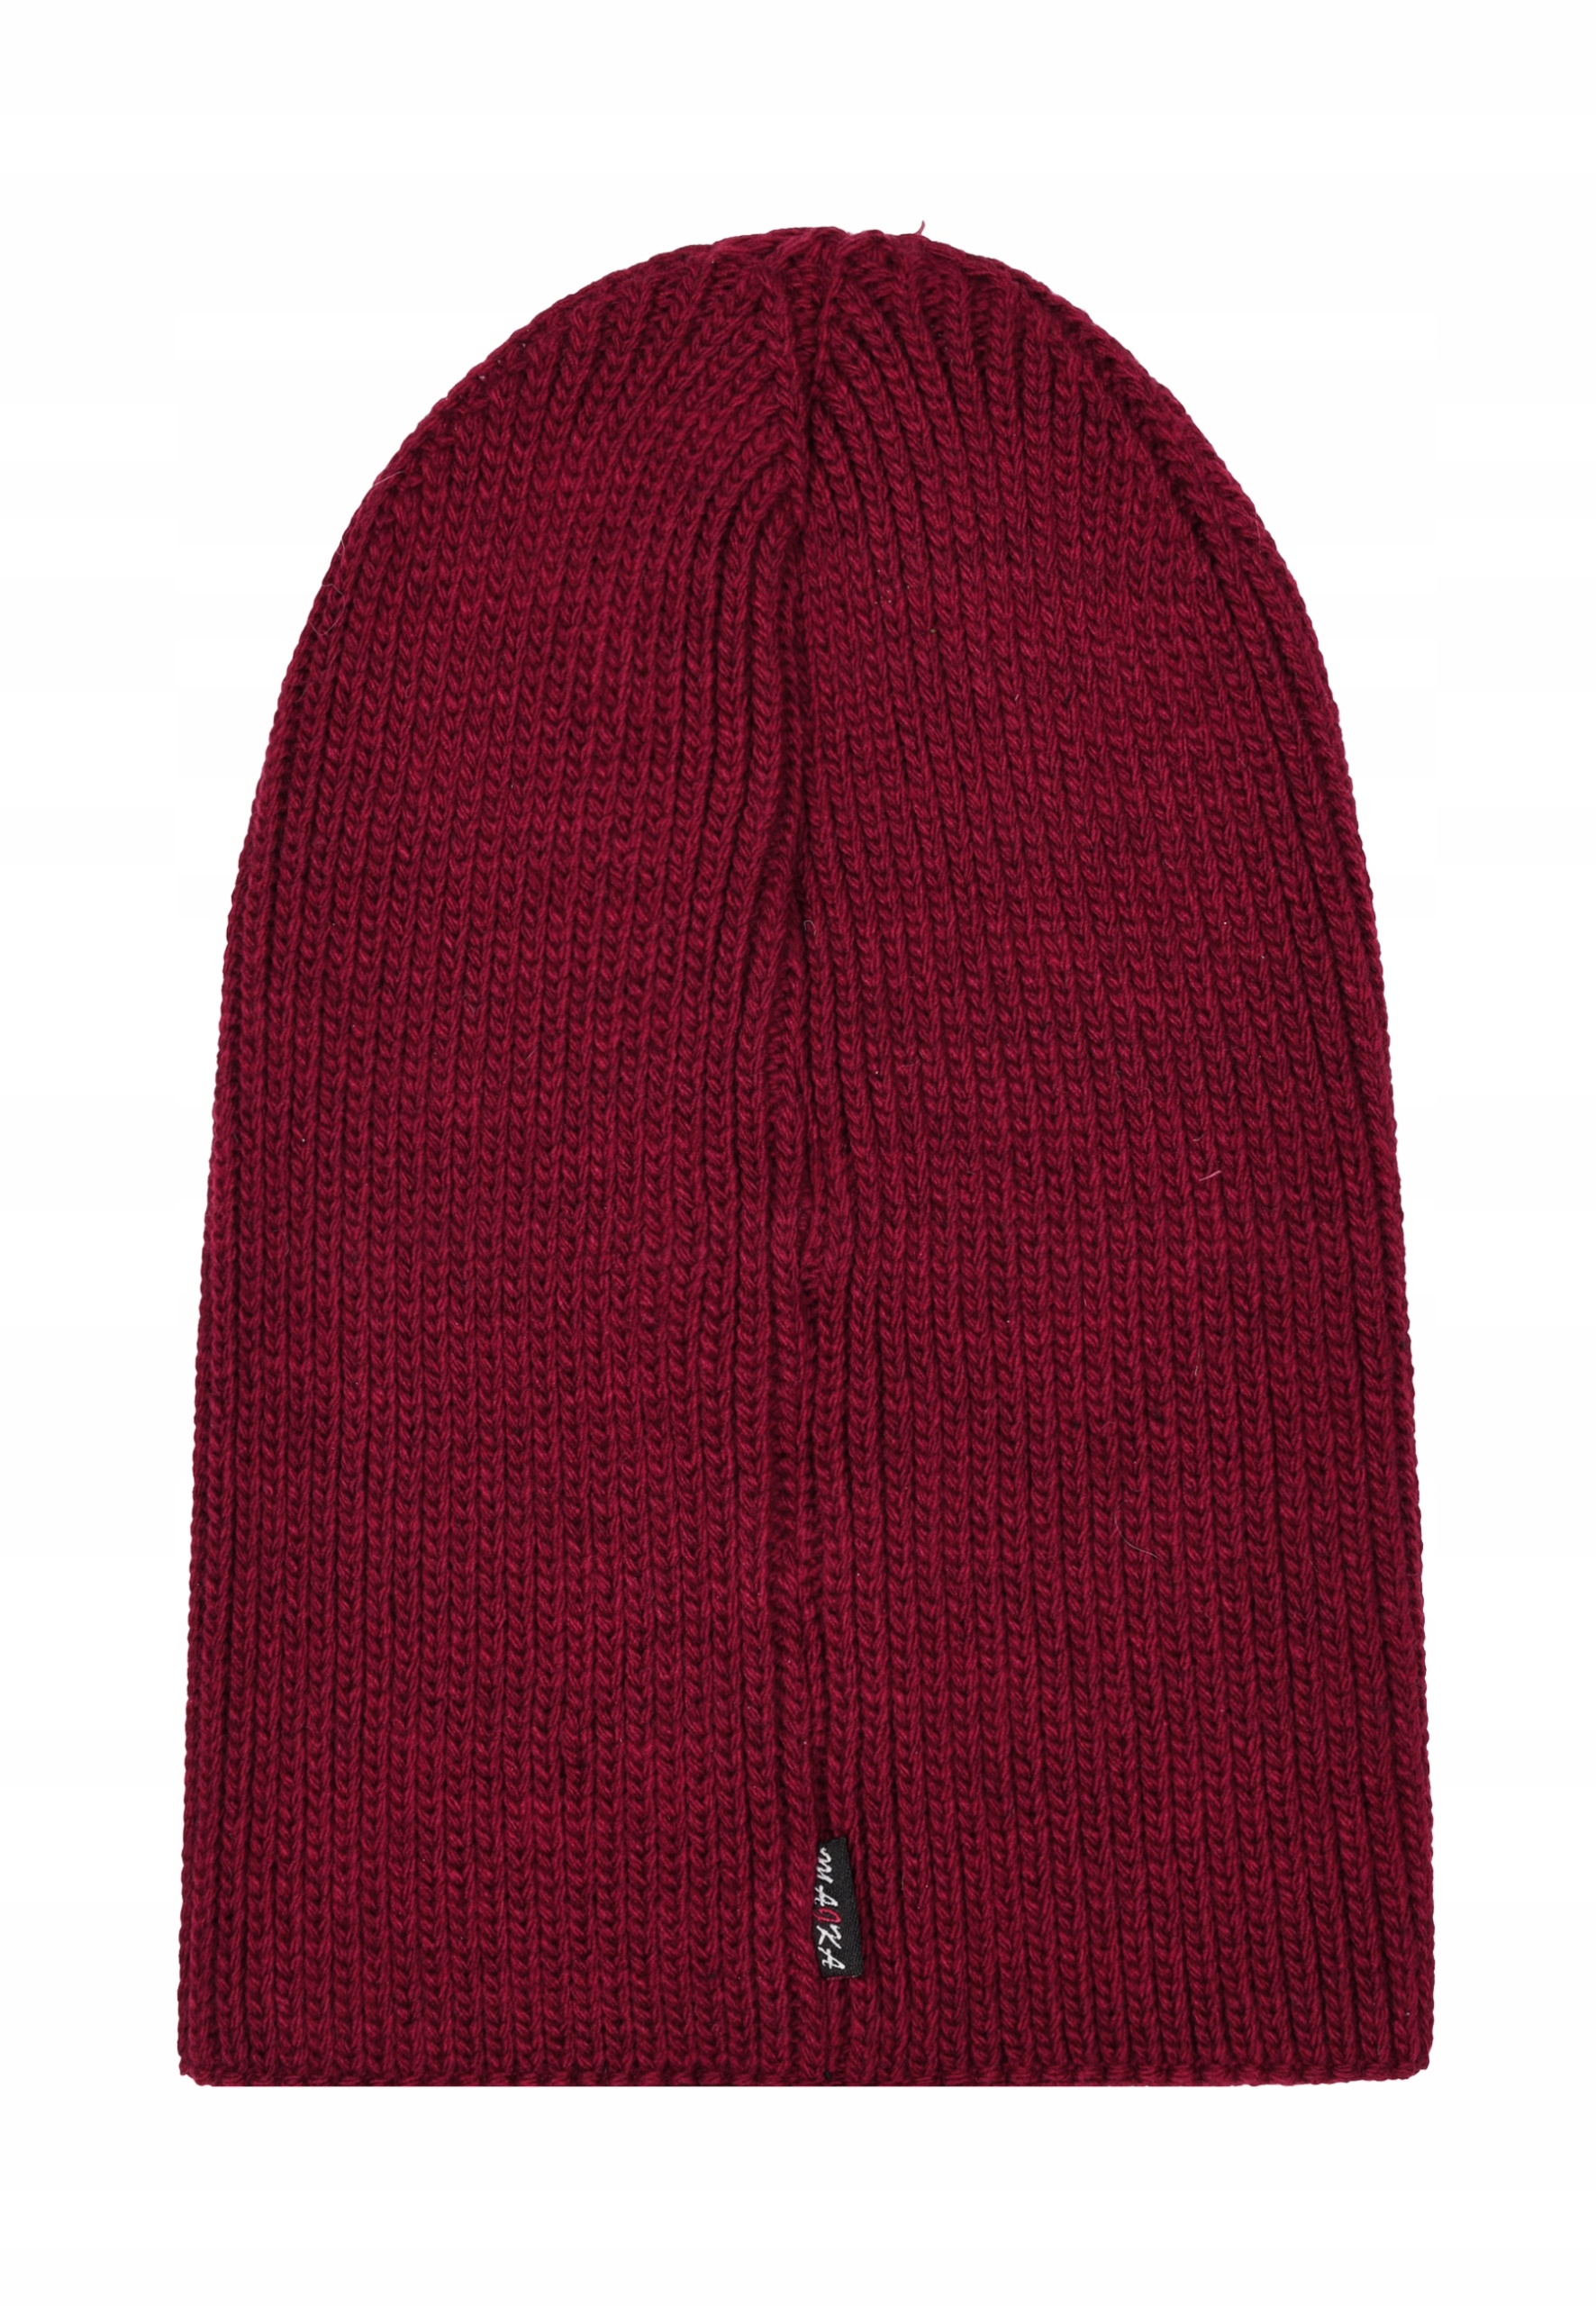 Женская шапка бини осень зима Майка модель D - 5 бордовый